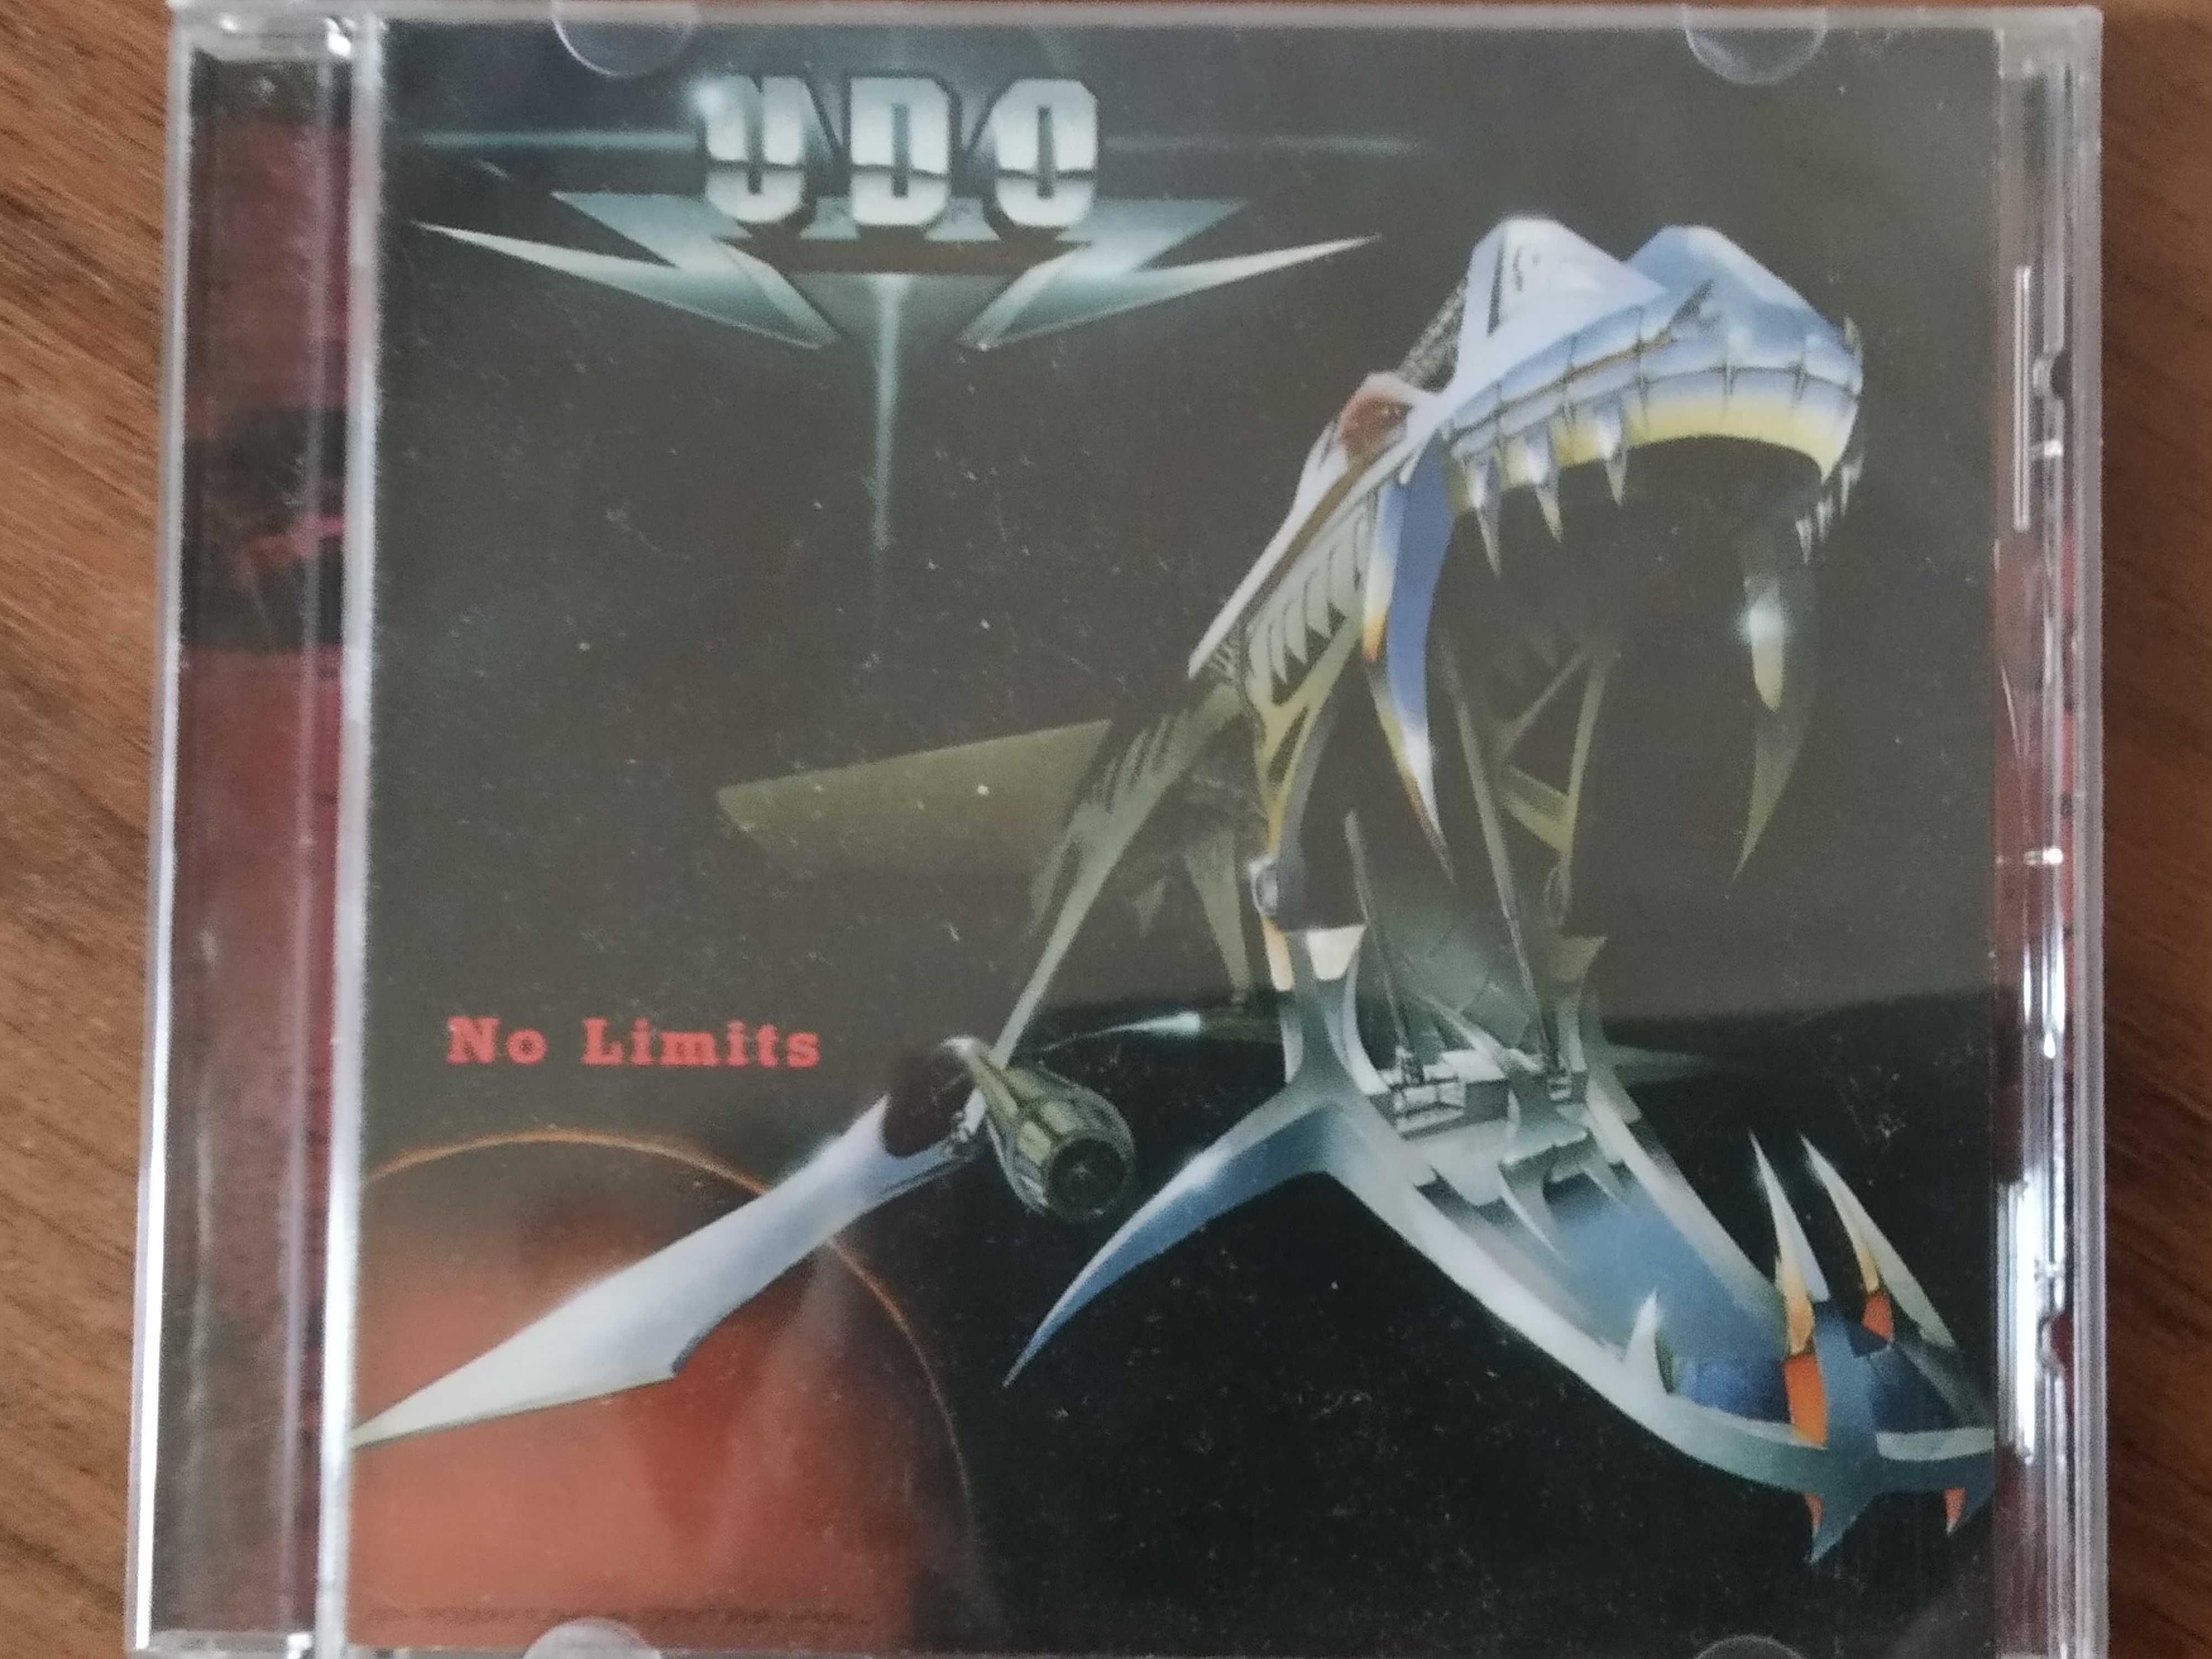 U.D.O. – No Limits (1998), Moon Records